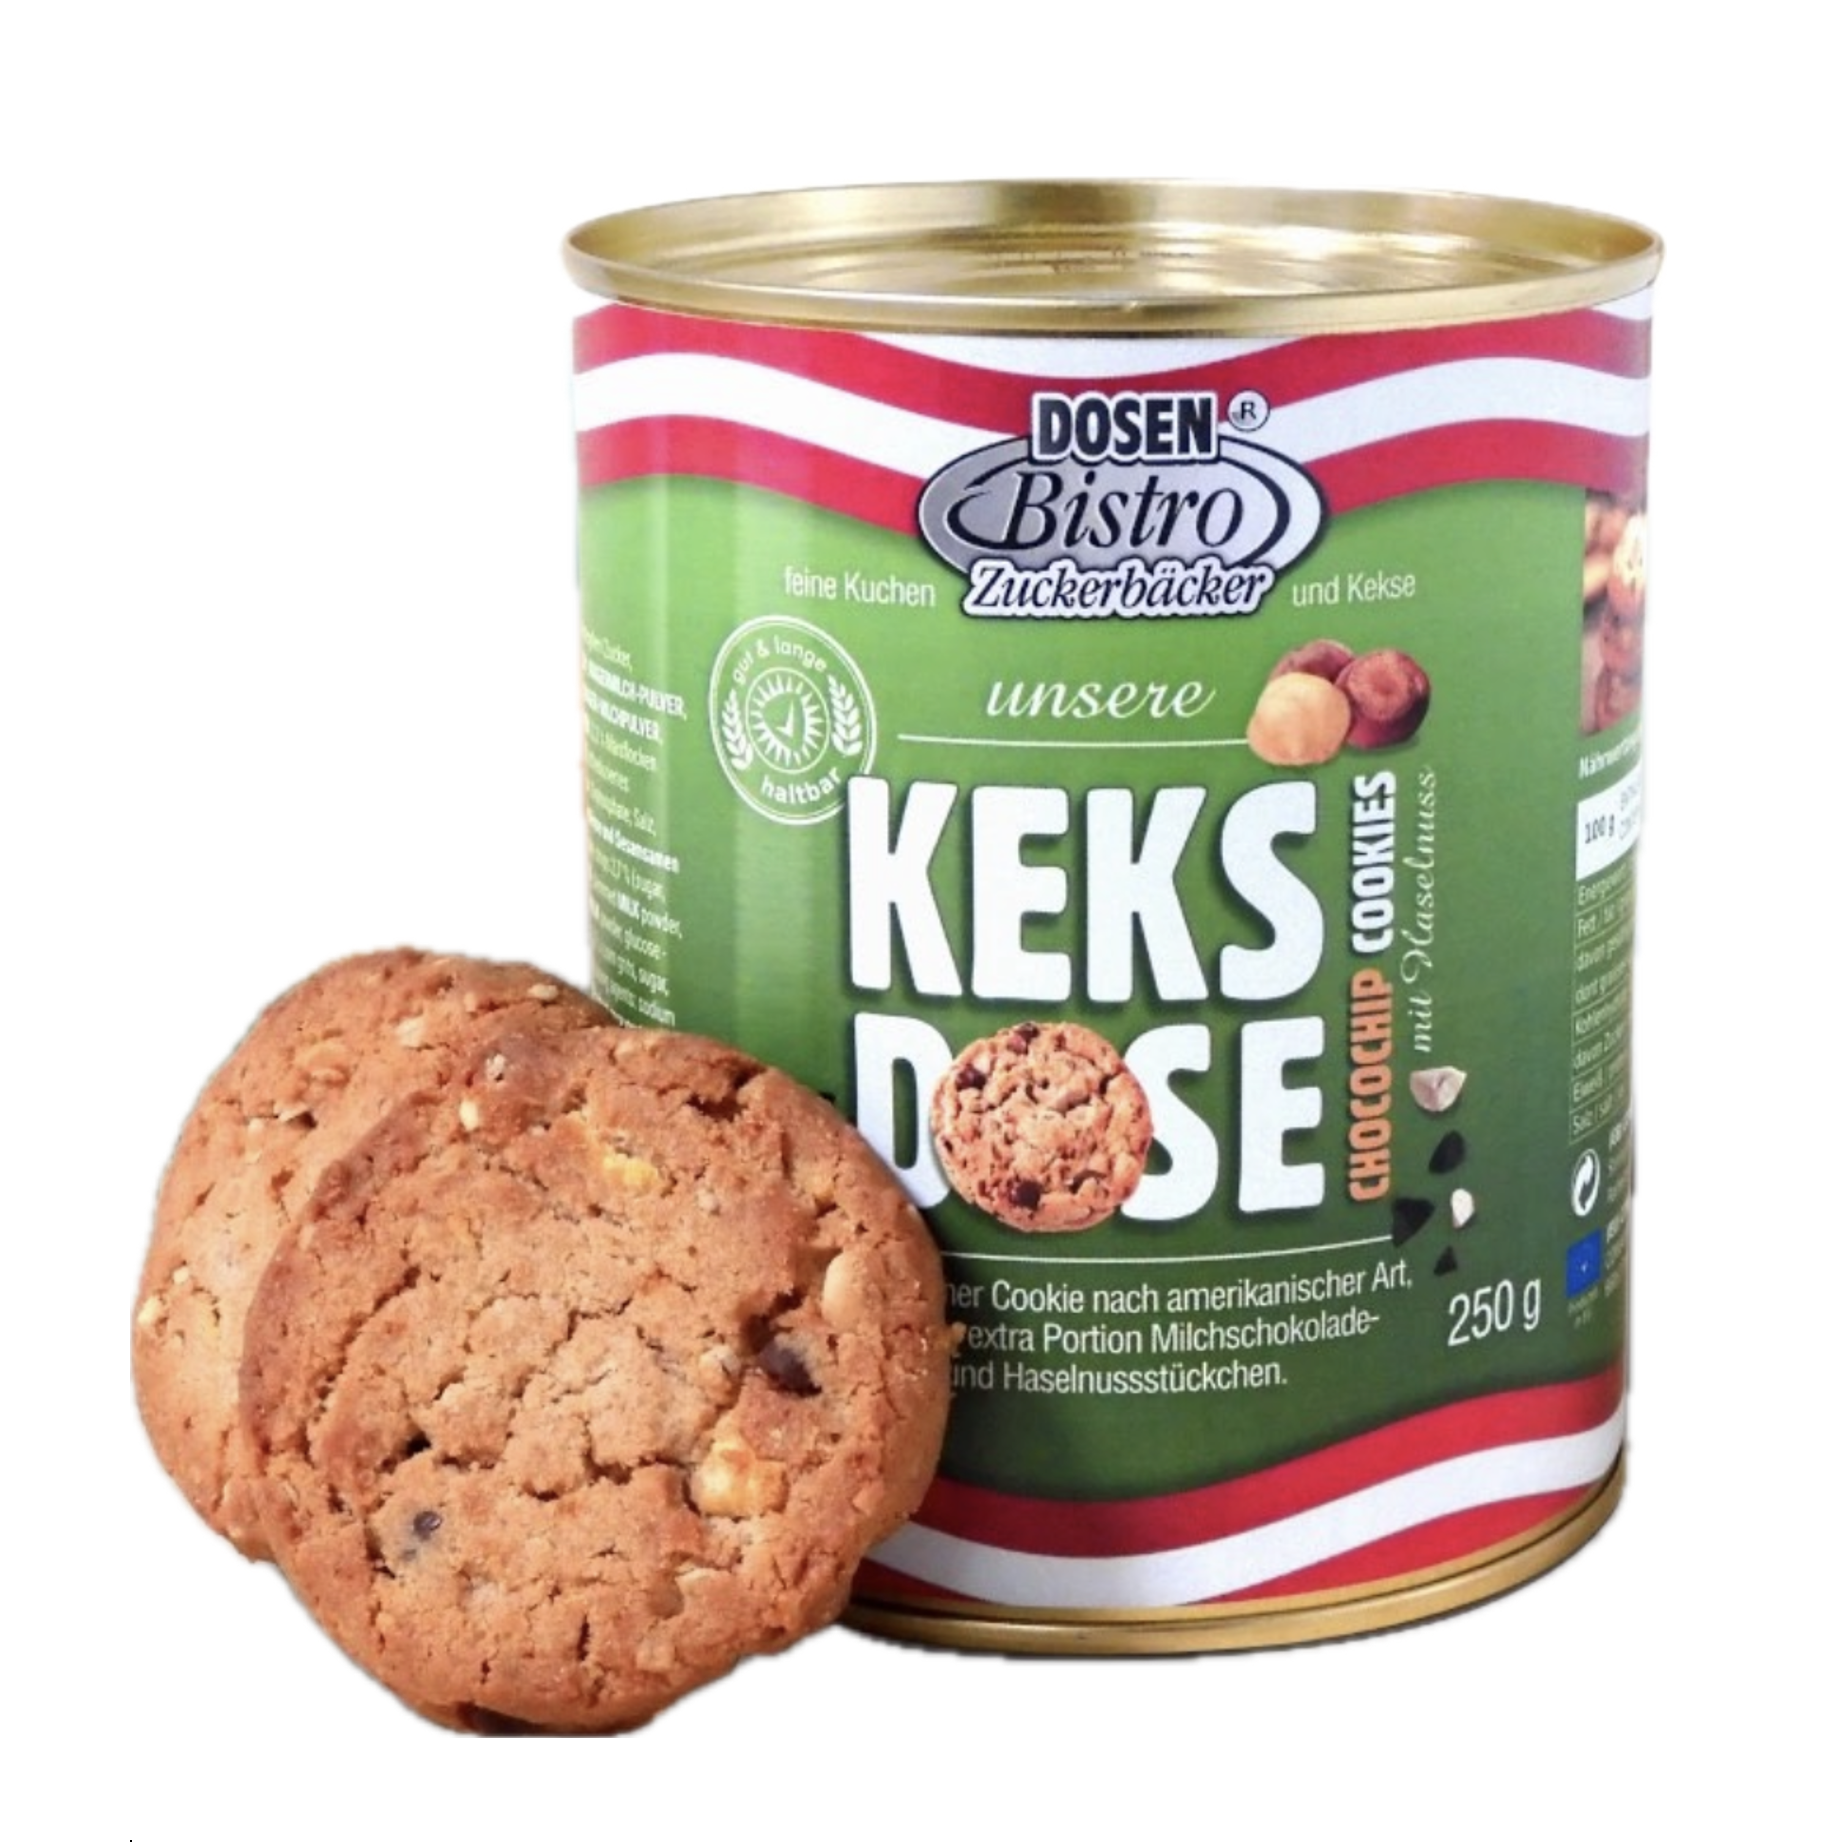 CONVAR DOSENBISTRO Keksdose Cookies mit Haselnuss und Choco-Chips (250g)